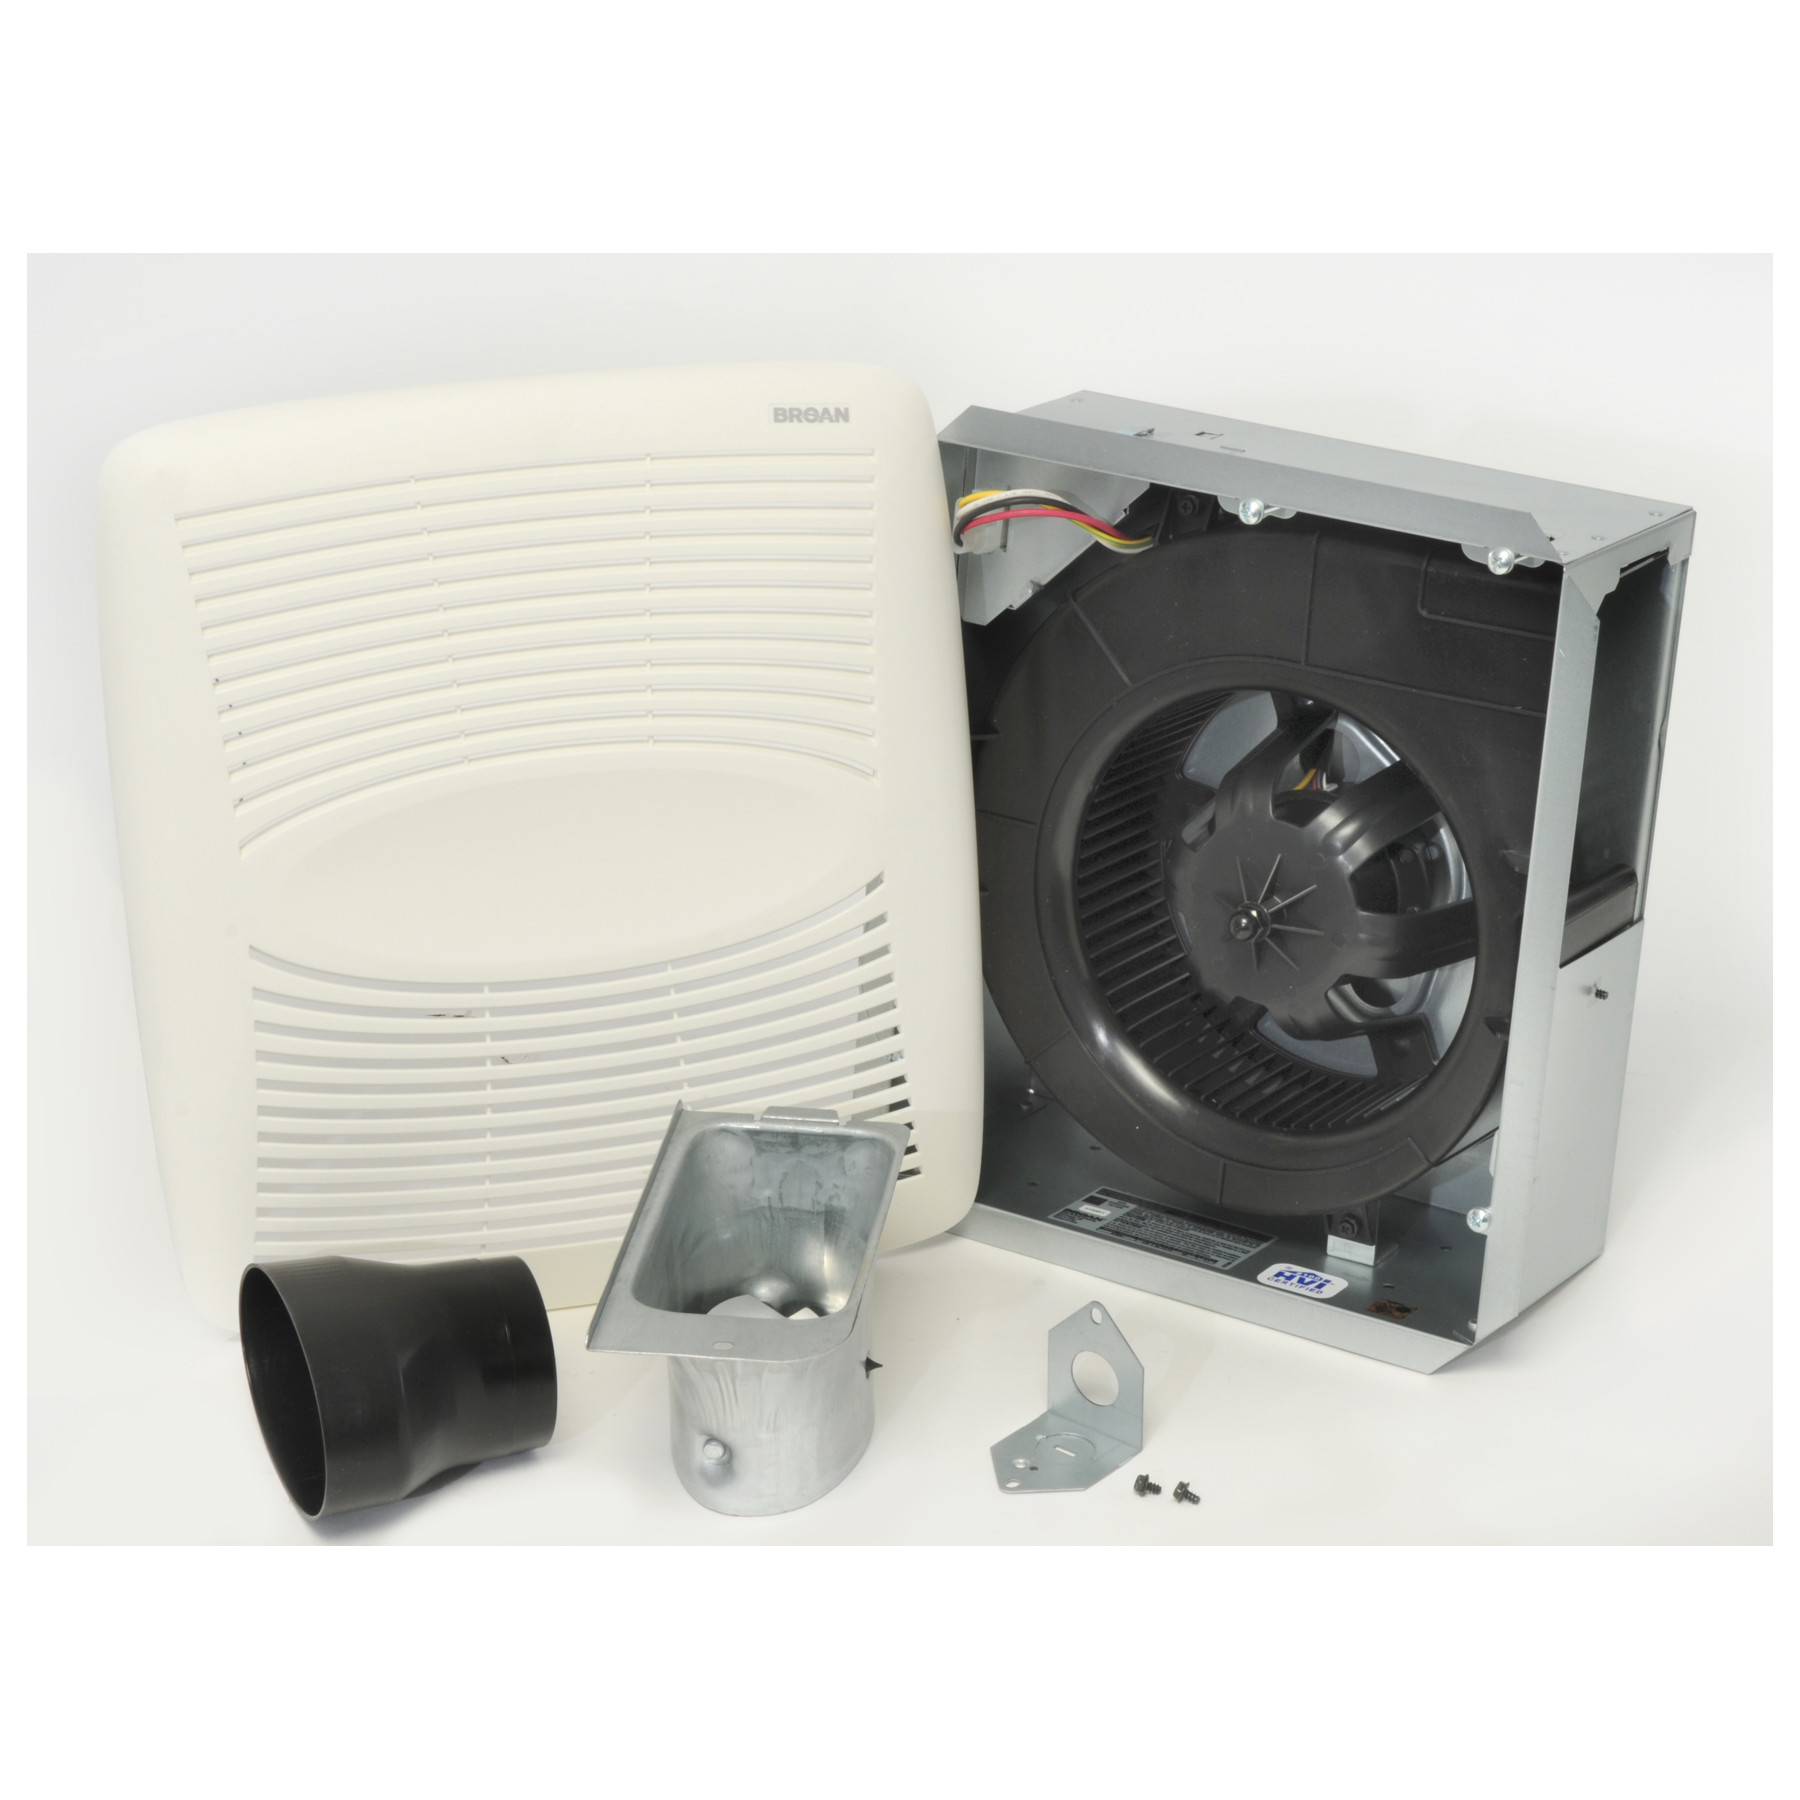 Broan® EZ Fit 80 CFM Ventilation Fan, 1.1 Sones; ENERGY STAR® Certified